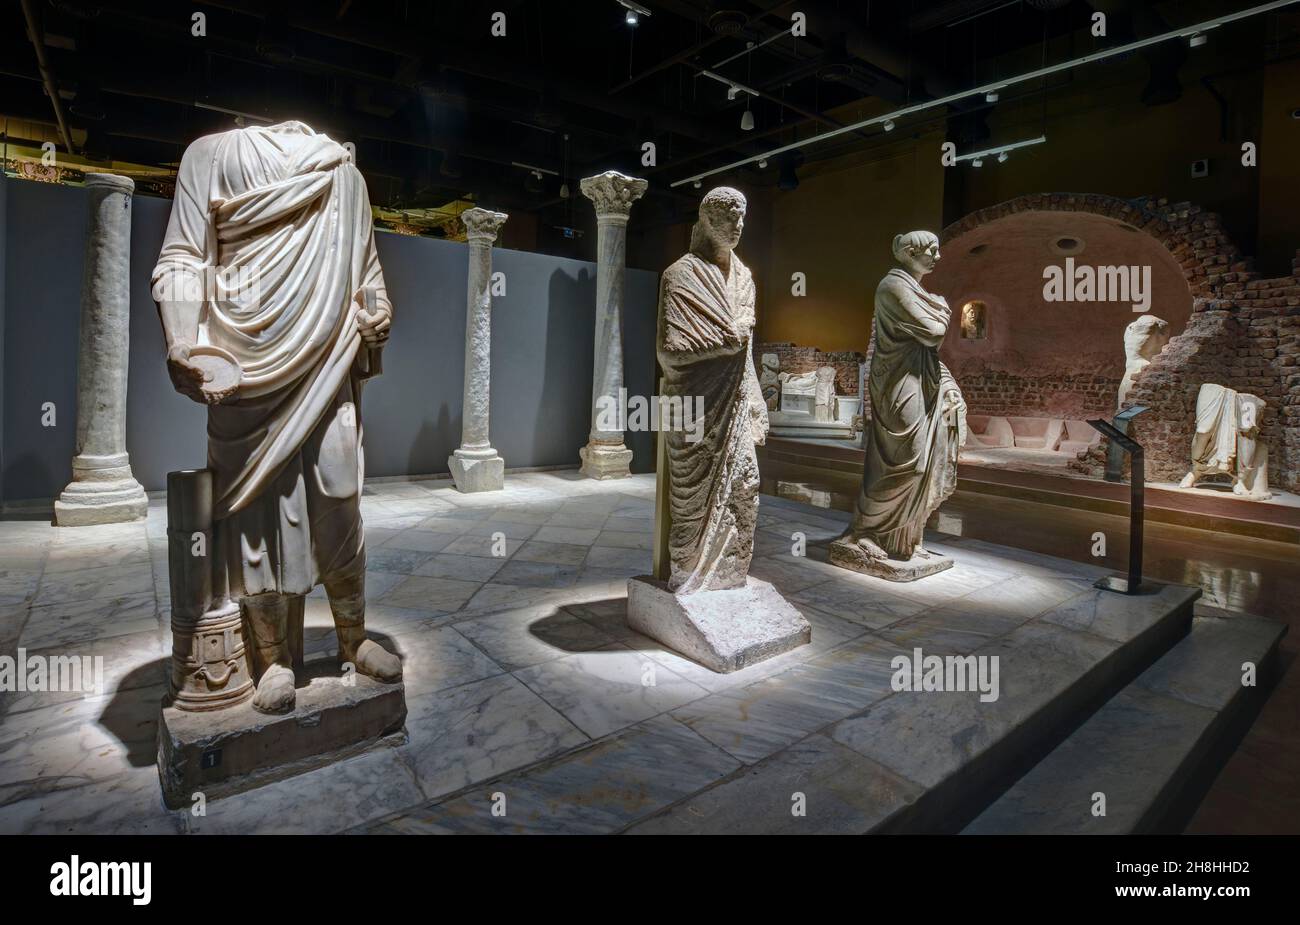 Égypte, Sinaï, Charm-el-Cheikh, musée, salle greco-romain Banque D'Images